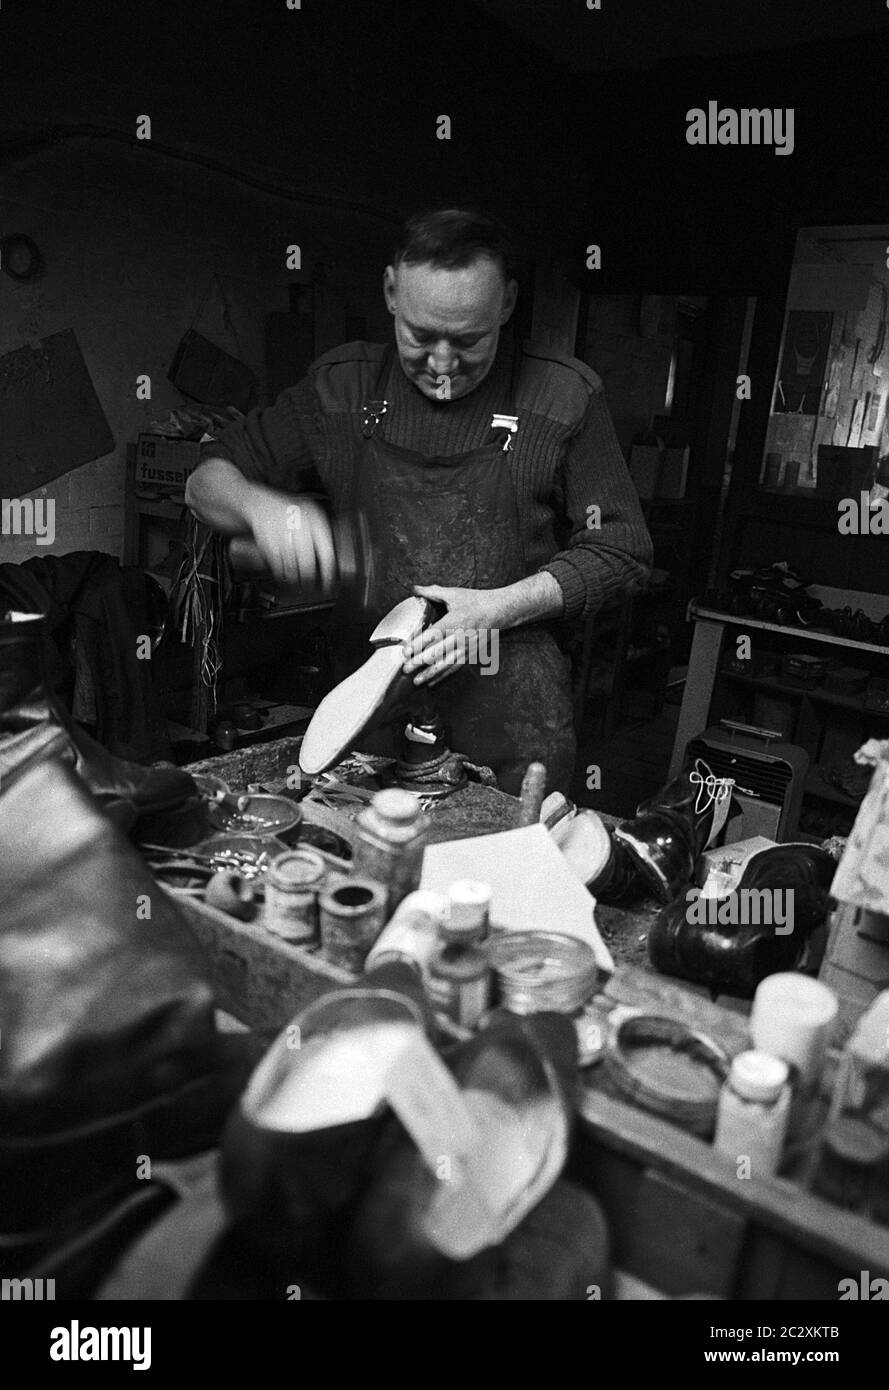 Vieille profession - Albert Thick, réparateur de chaussures de longue date, au travail dans son atelier de Devisbury Wiltshire au Royaume-Uni 1991. Banque D'Images